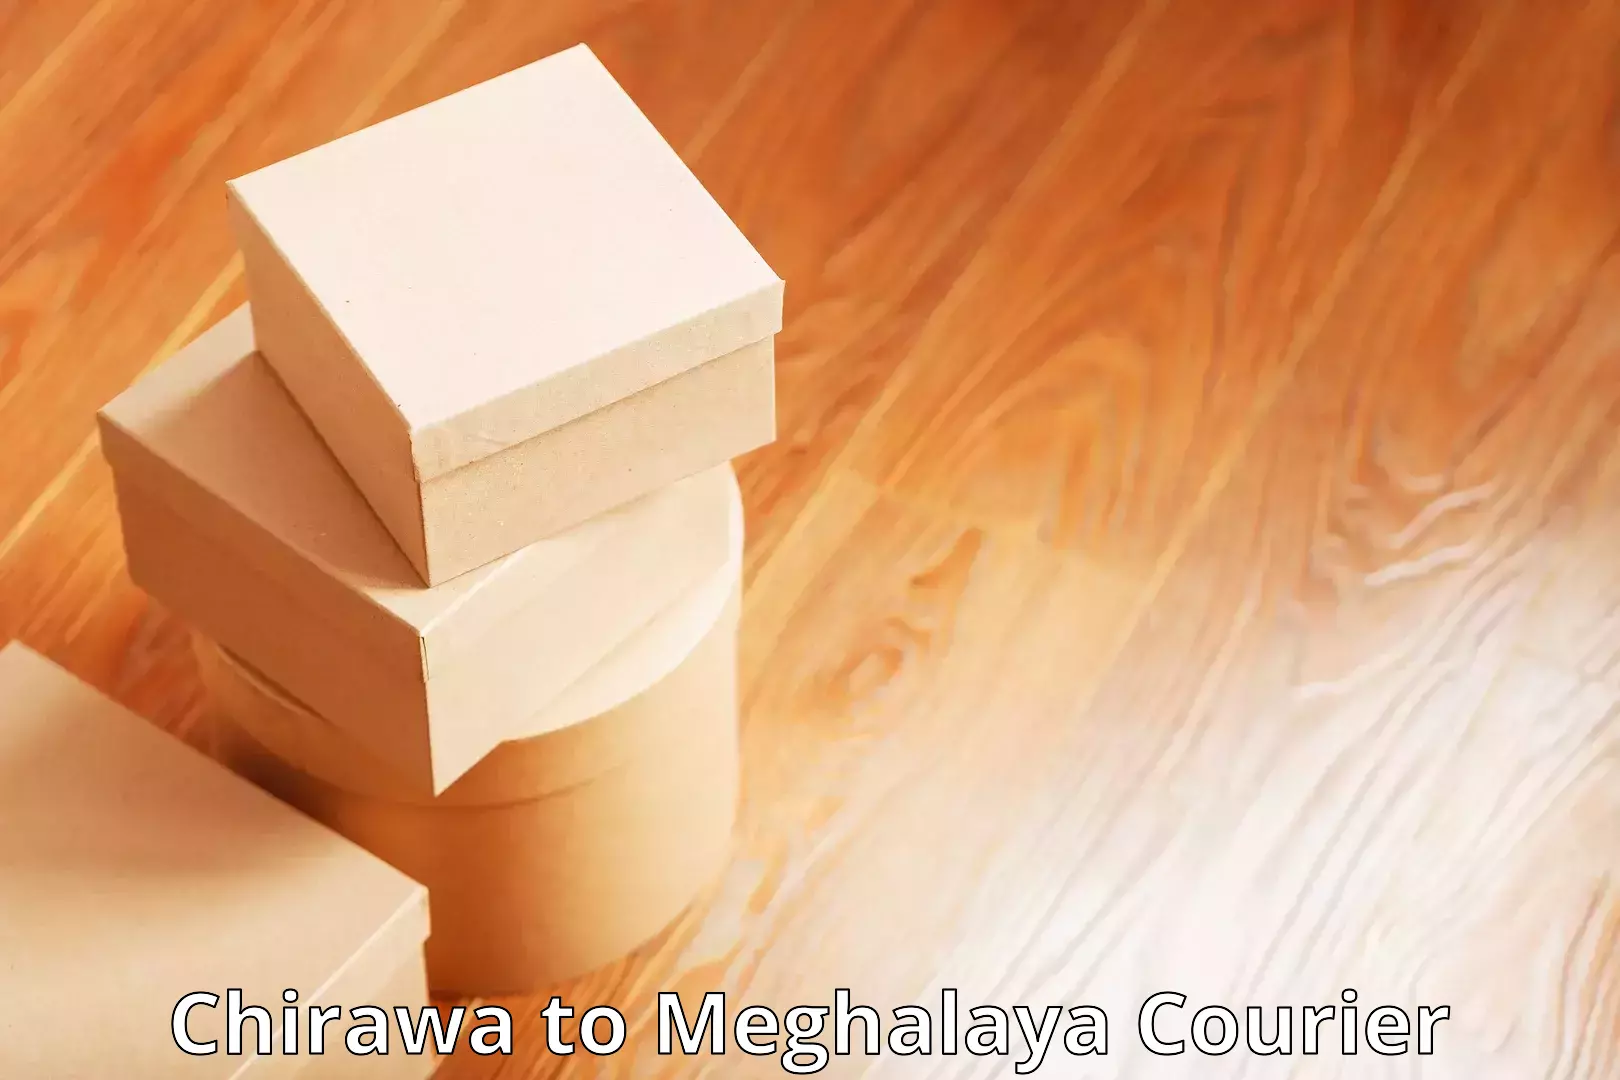 Business delivery service Chirawa to Meghalaya